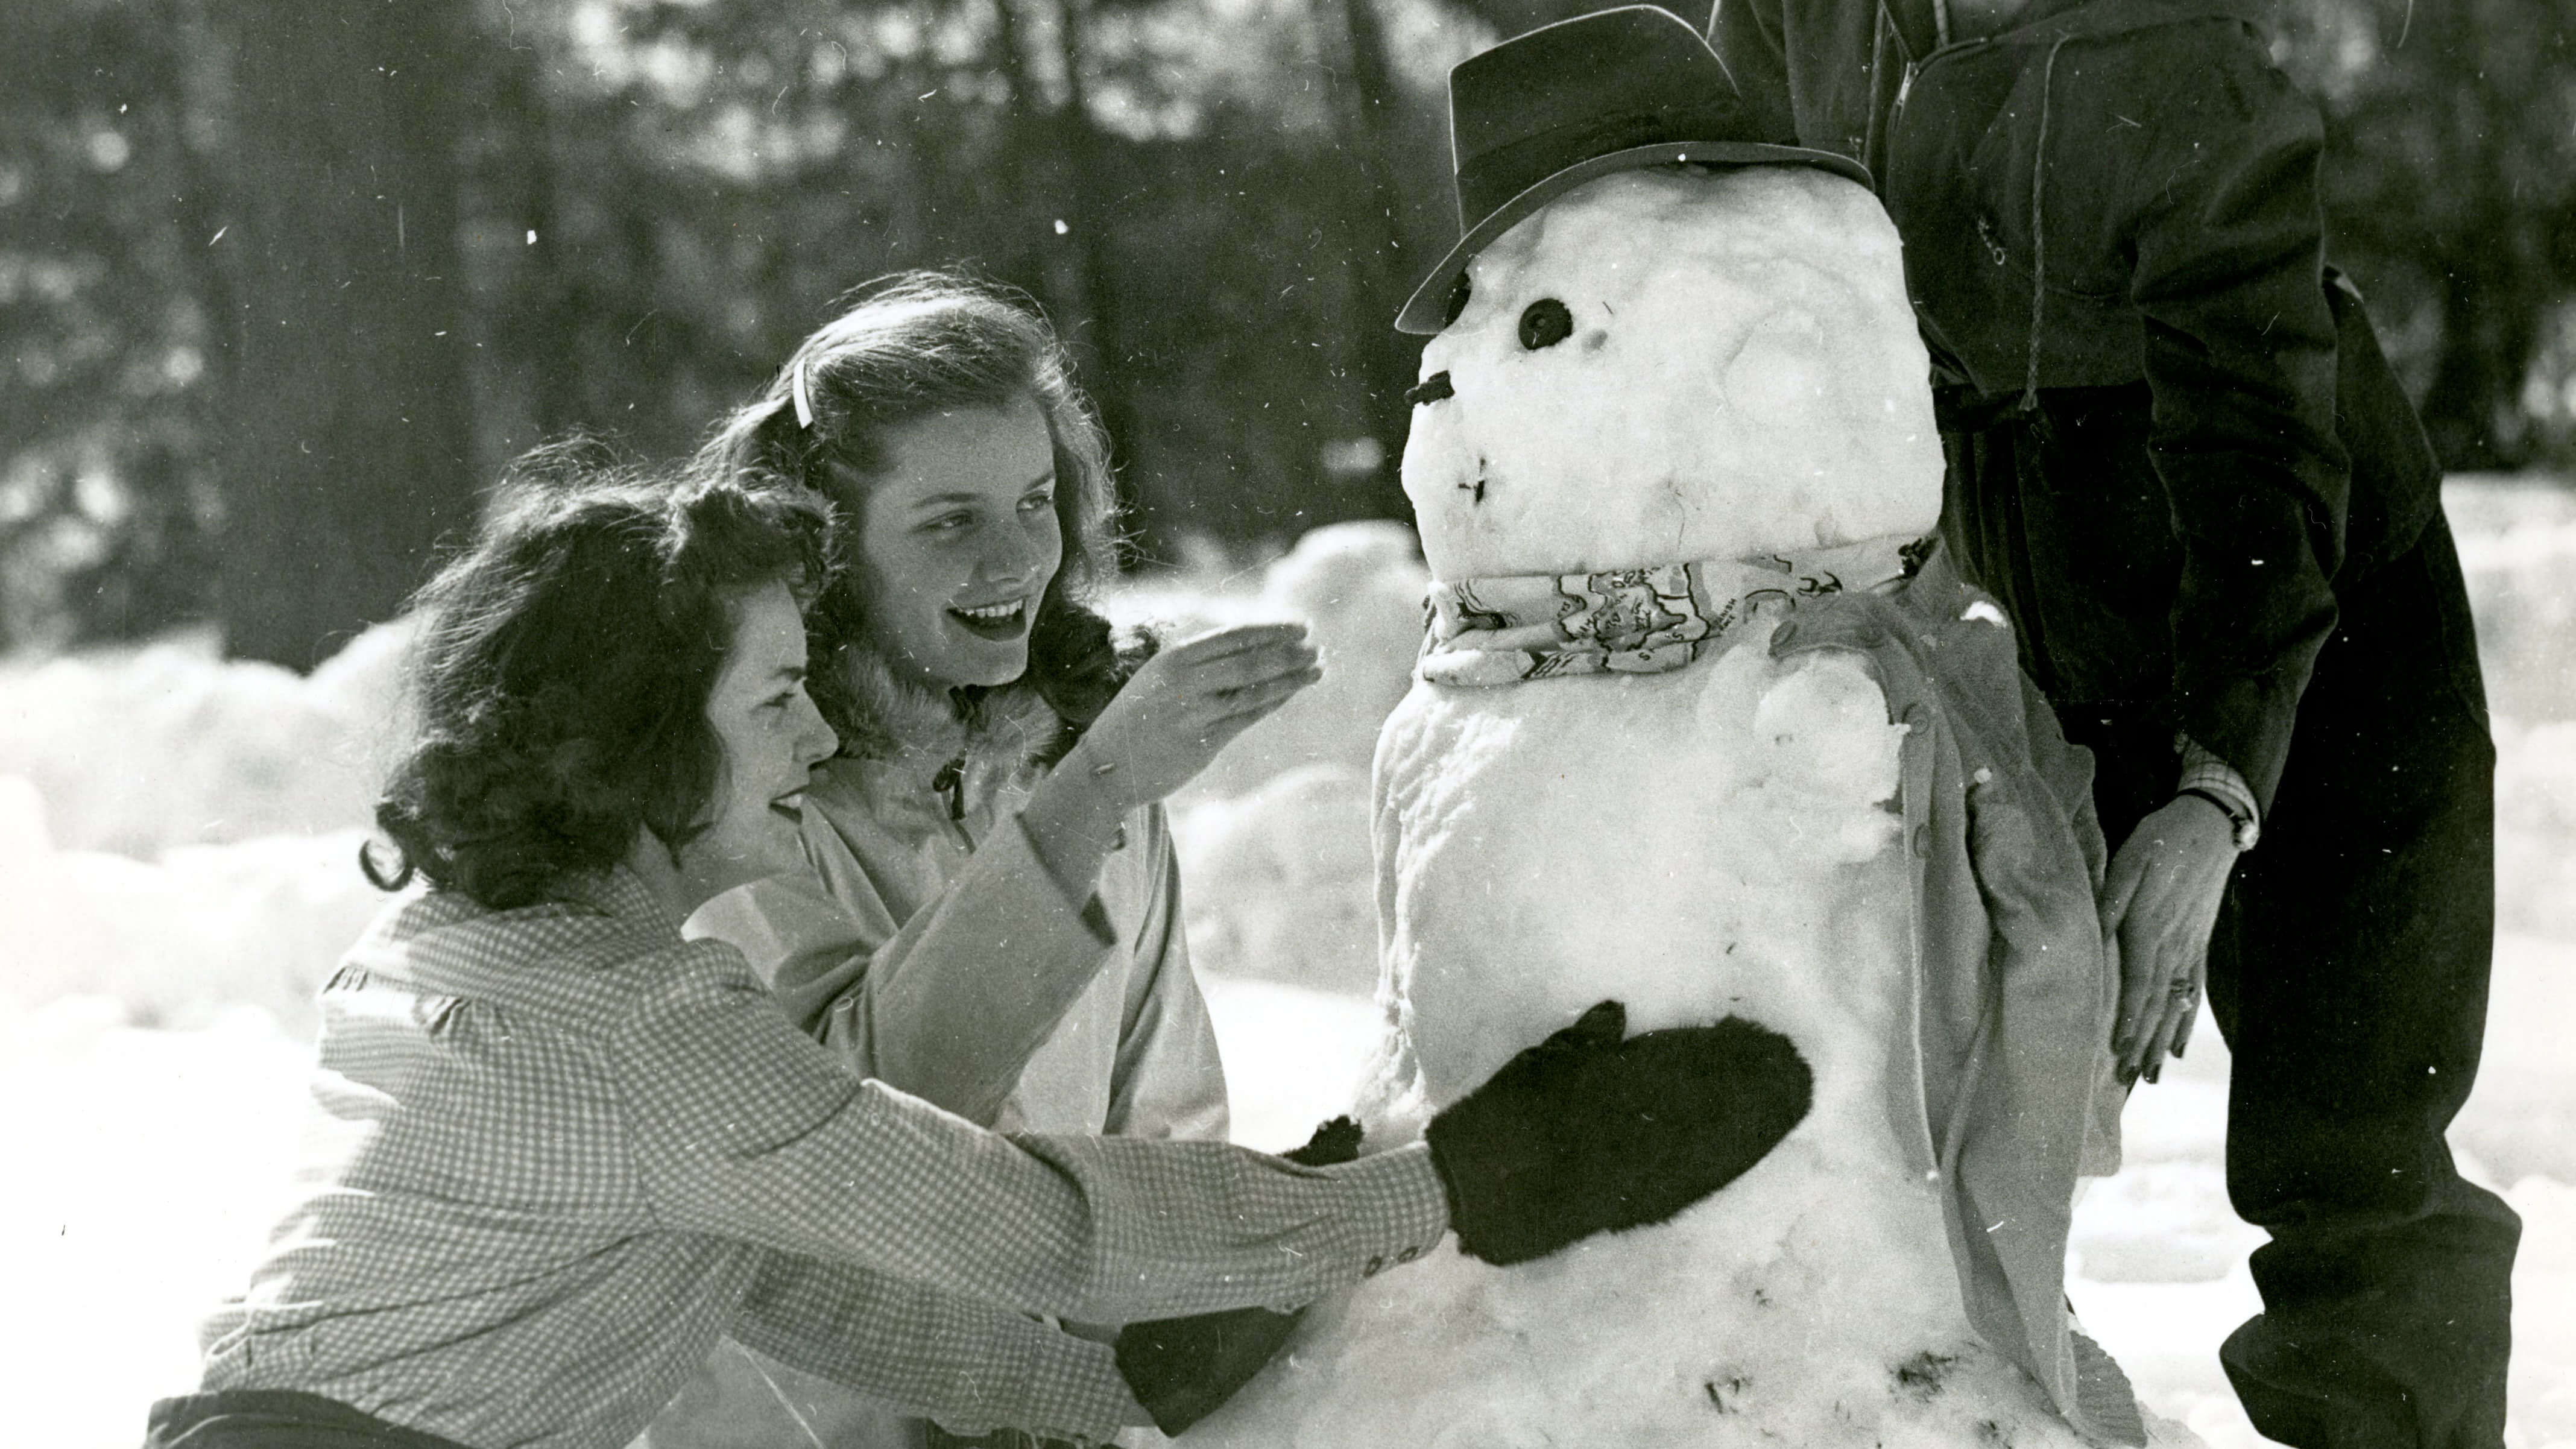 Two women joyfully making a snowman